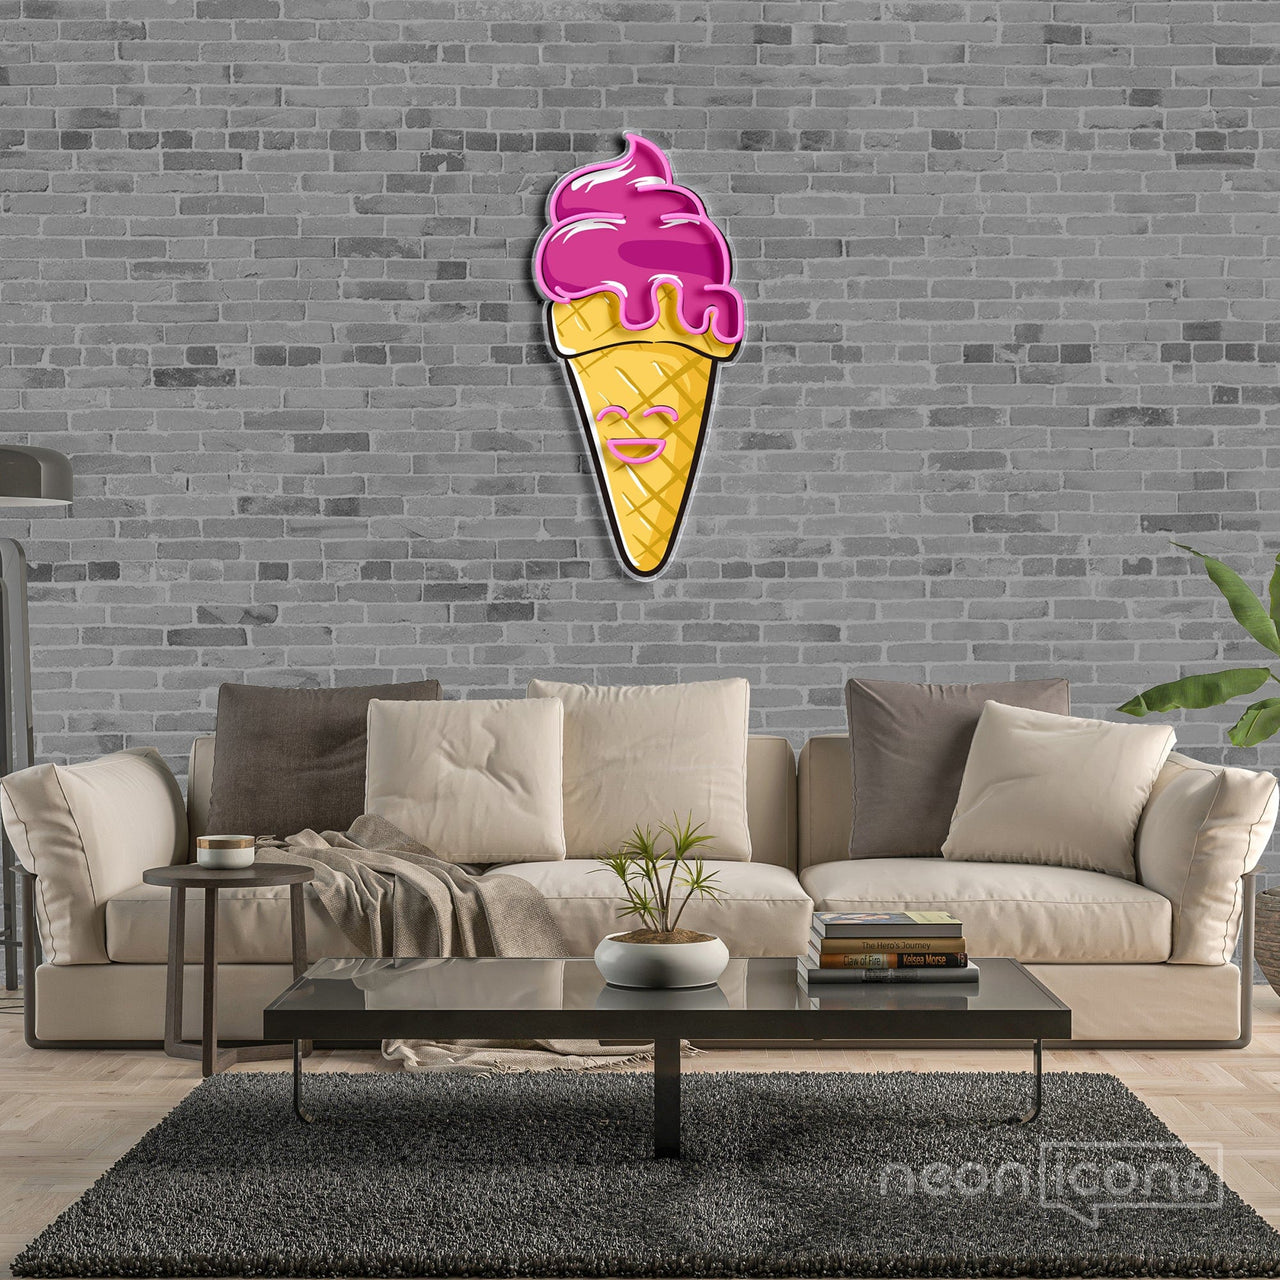 "Happycream Cone V2" Neon x Acrylic Artwork by Neon Icons